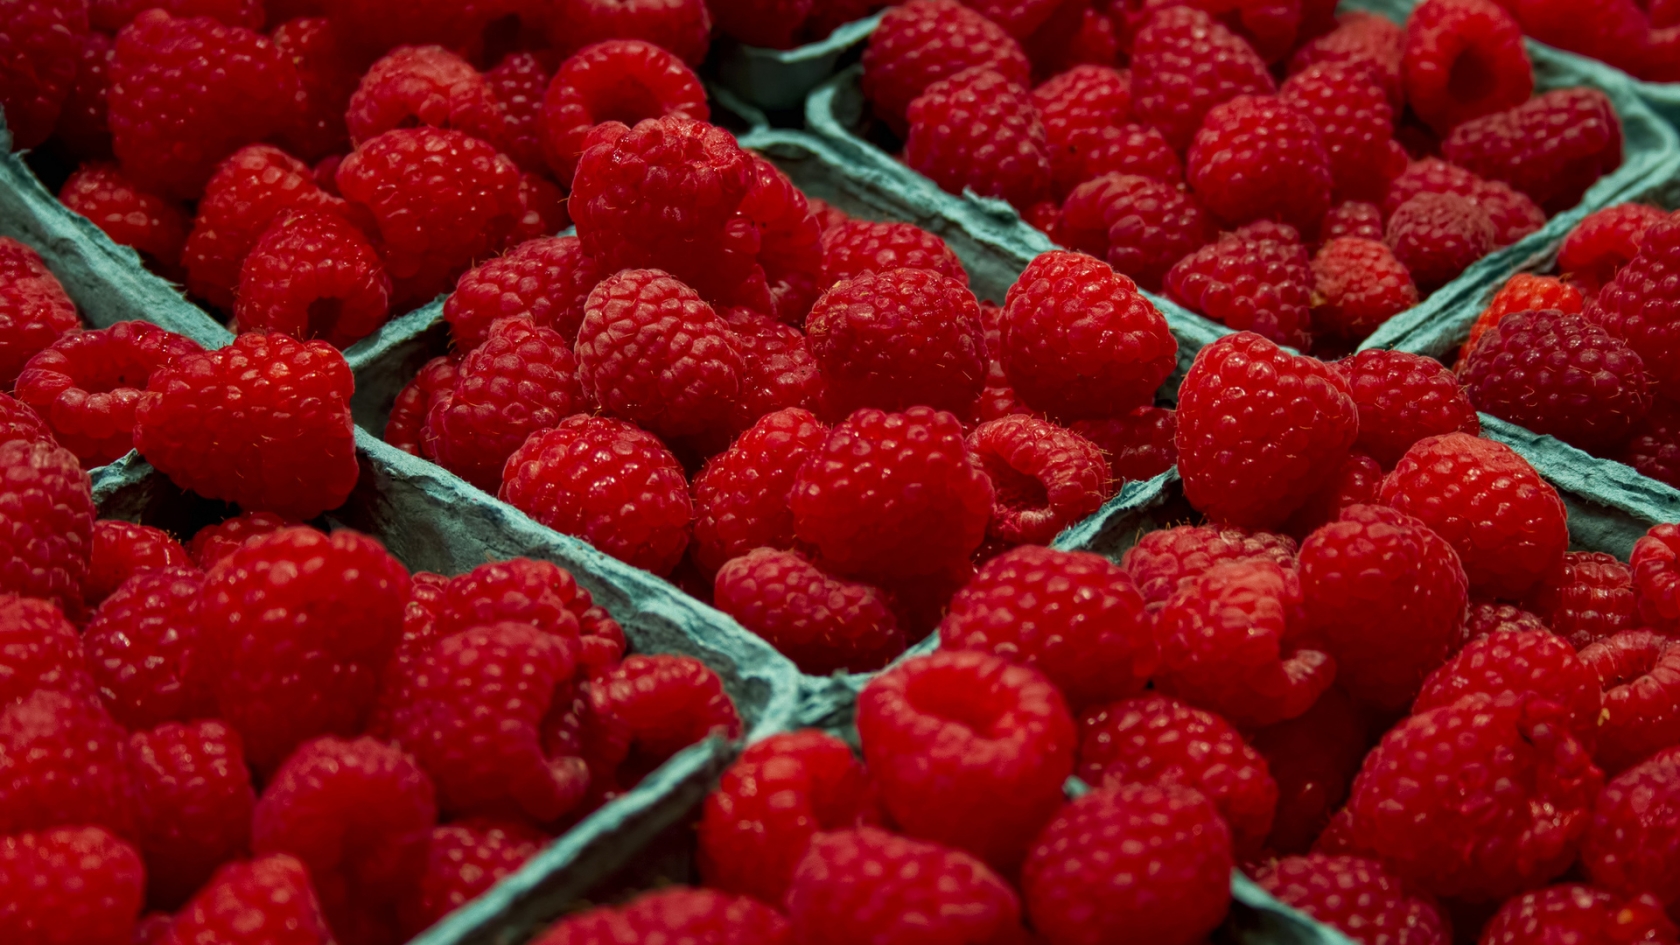 Raspberries  for 1680 x 945 HDTV resolution